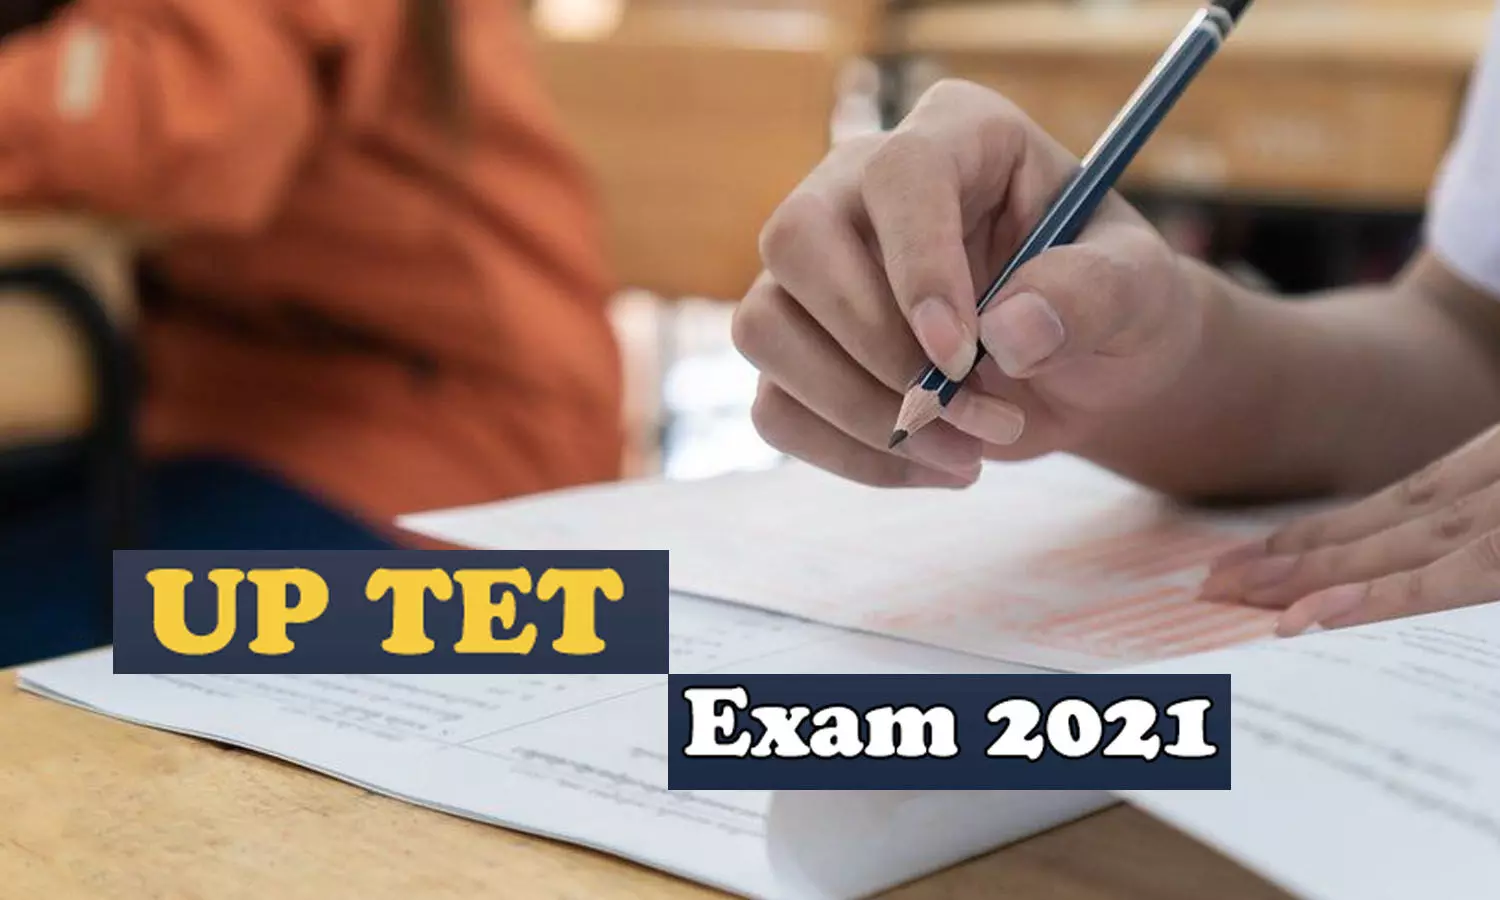 UP TET Exam Cancel: रद्द हुआ यूपीटेट एग्जाम, व्हॉट्सएप पर पेपर लीक होने के बाद फैसला